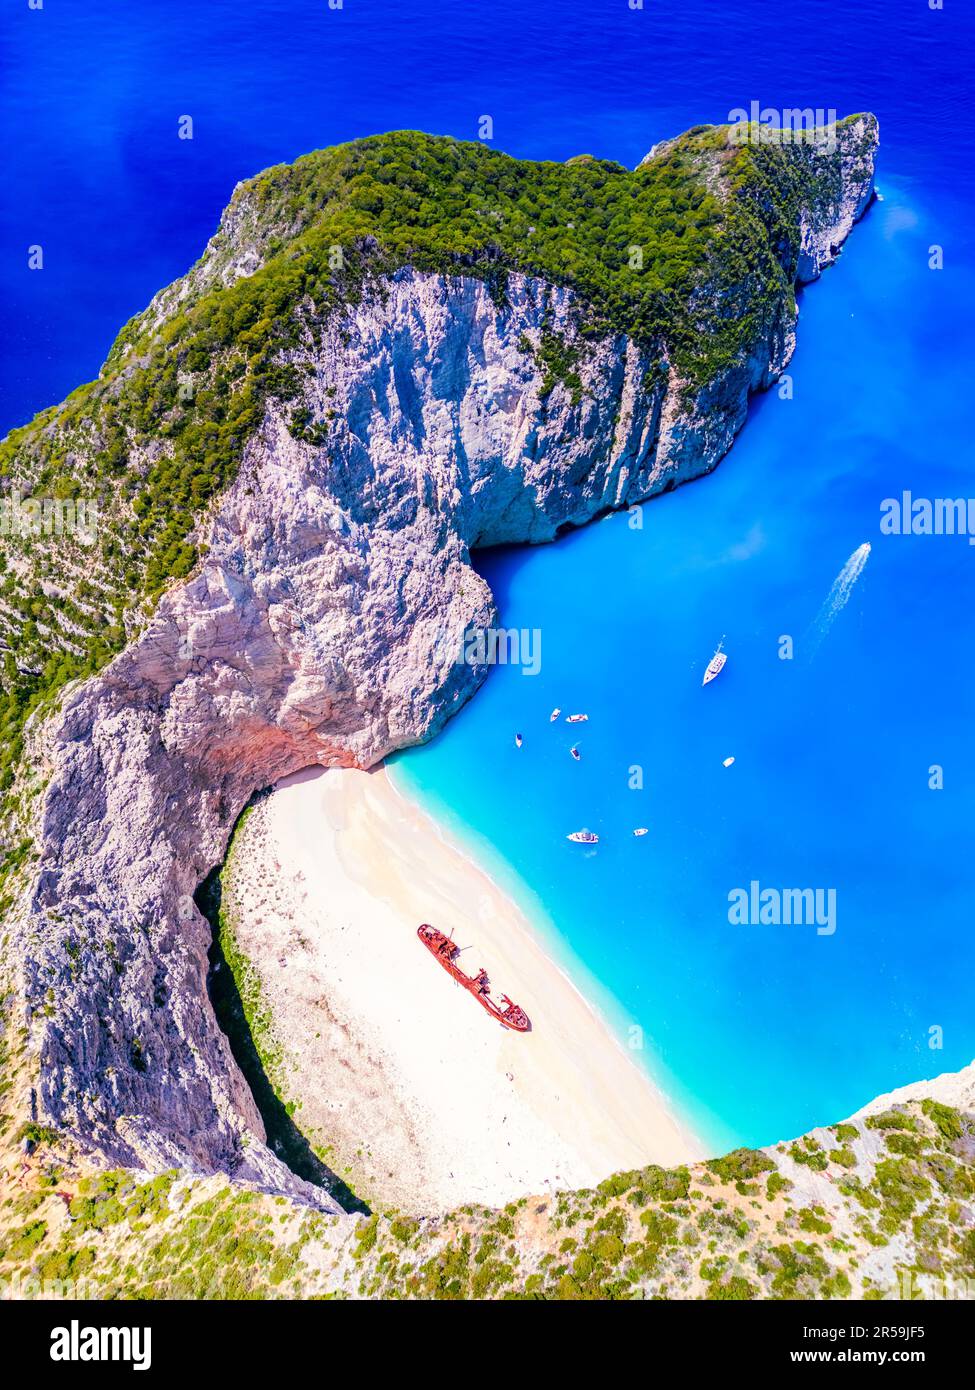 Plage de Navagio, Zakynthos. Vue aérienne de drone de la célèbre plage Shipwreck, paysage aérien de la mer Ionienne, les îles grecques, la Grèce. Banque D'Images